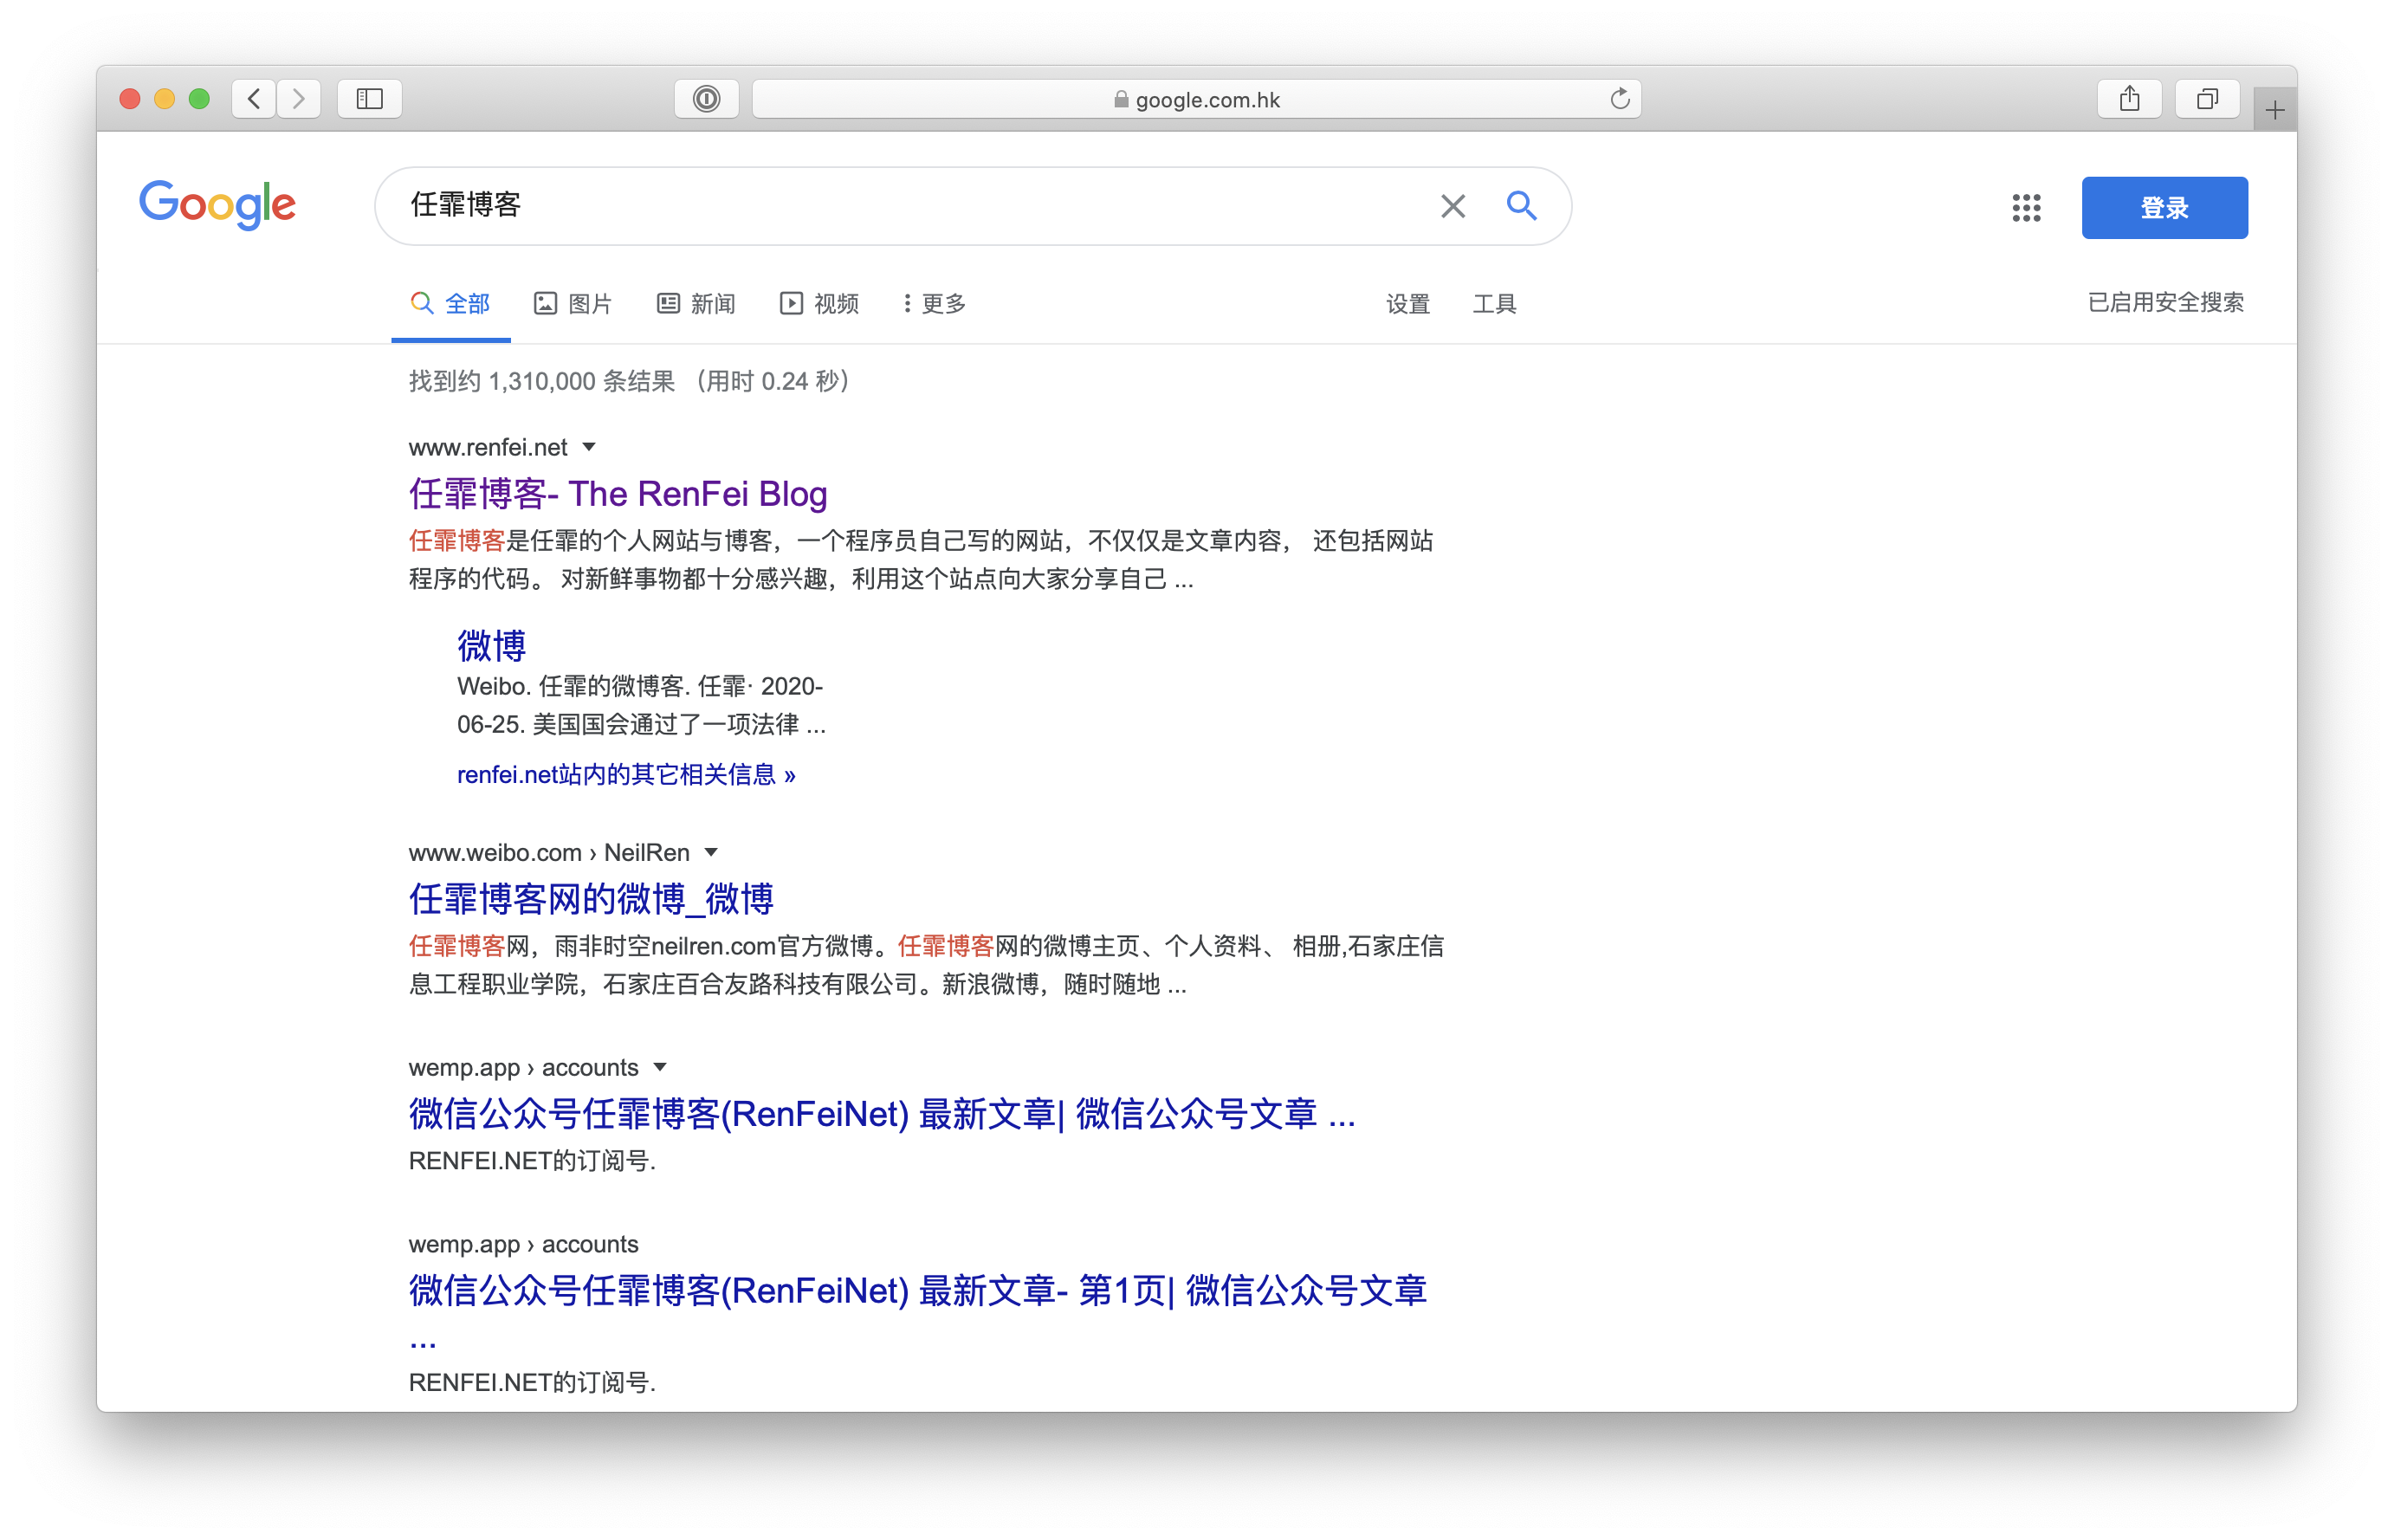 突然发现任霏博客再次触发Google Sitelink，大标题下展示子频道，上一次触发Google Sitelink在2014年2月，由于更换域名，一切从头开始，持续更新原创内容，还是有效果的